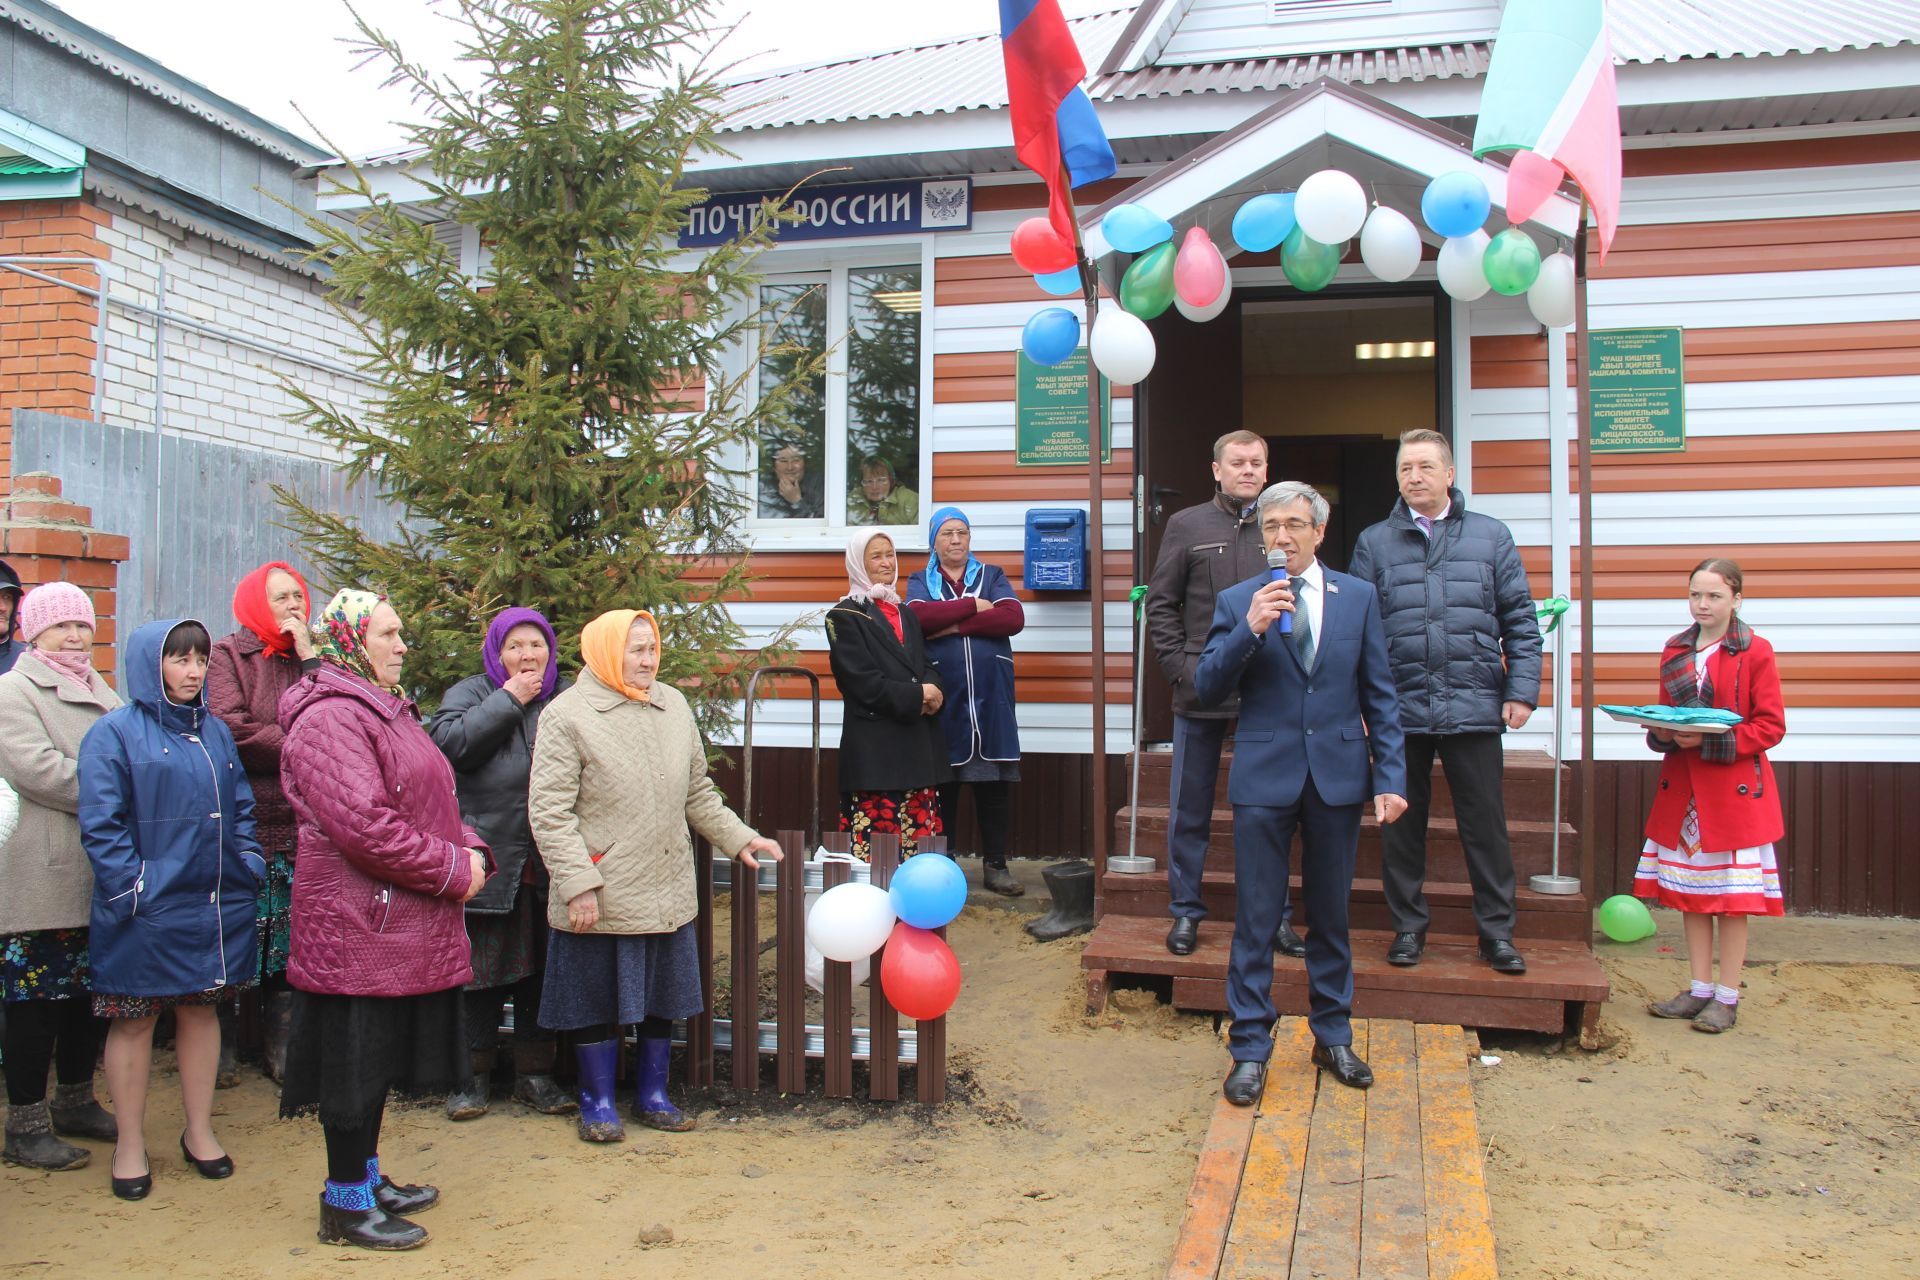 В Чувашских Кищаках открылось здание сельского Совета (+ фото)